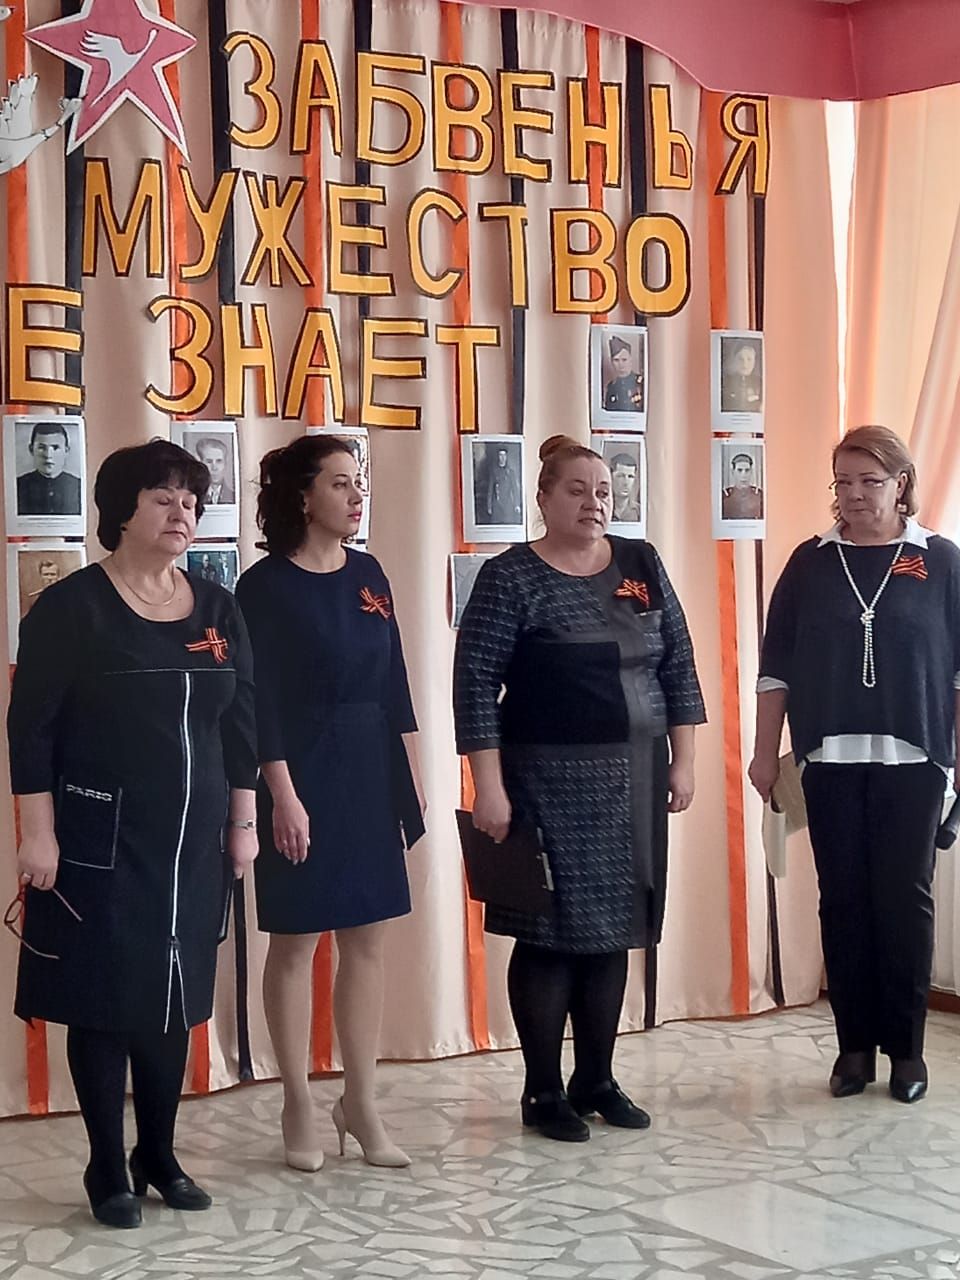 В Введенской Слободе открыли мемориальную доску Азизу Саттарову